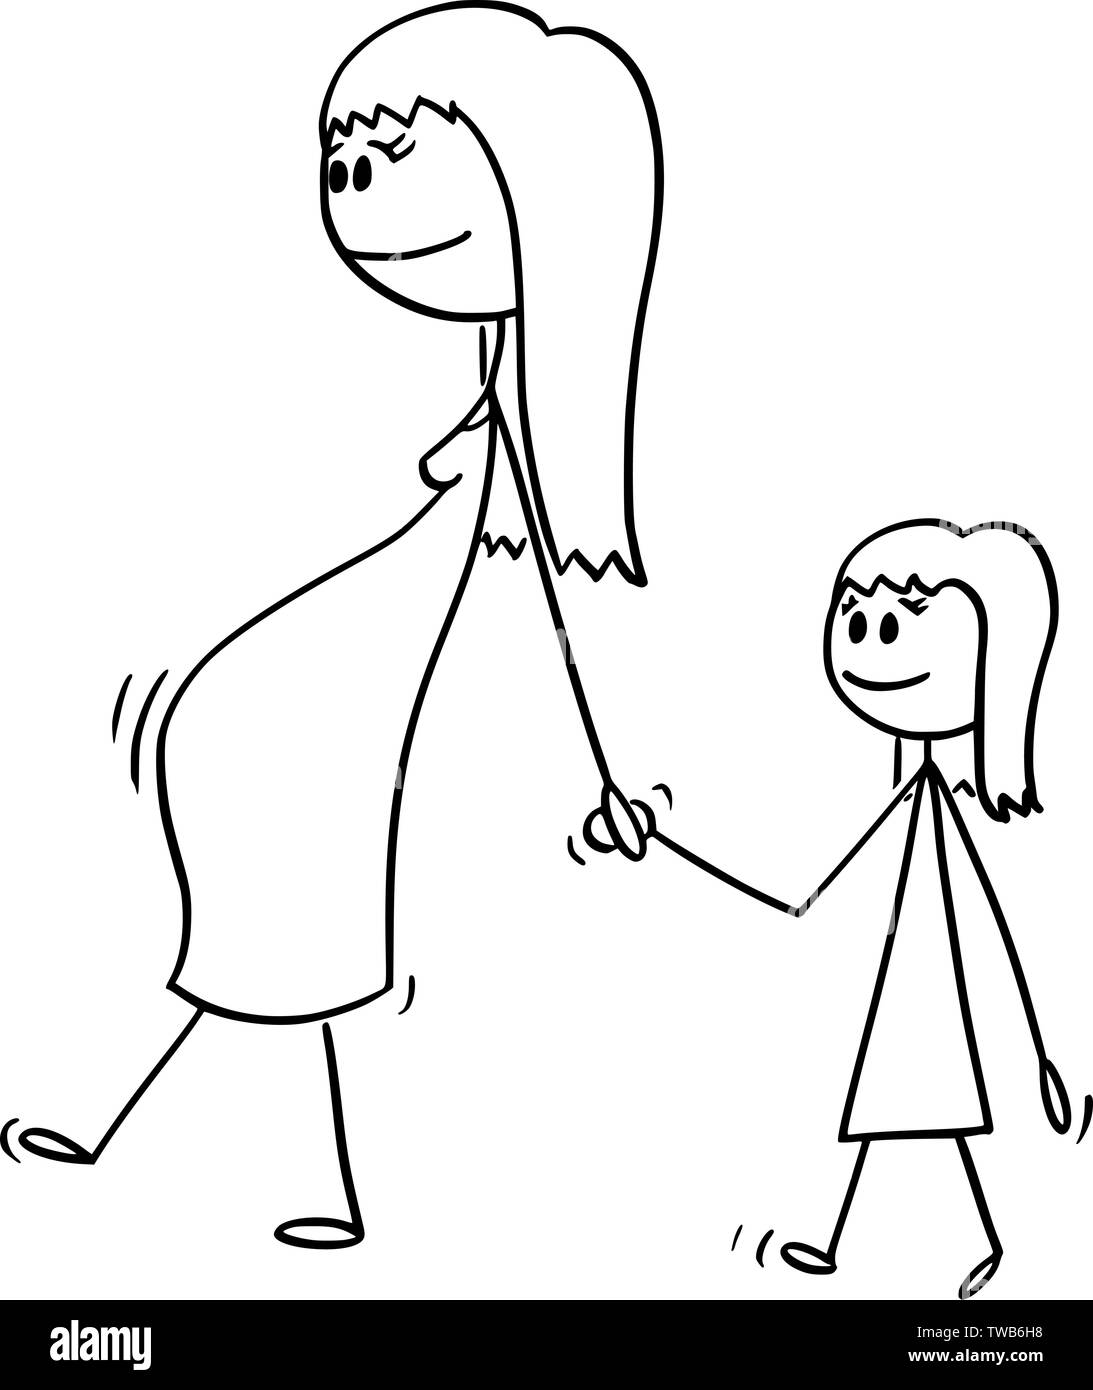 Vektor cartoon Strichmännchen Zeichnen konzeptionelle Darstellung der schwangeren Frau oder Mutter oder die Mutter zusammen mit kleinen Mädchen oder Tochter. Sie sind zu Fuß und halten sich an den Händen. Stock Vektor